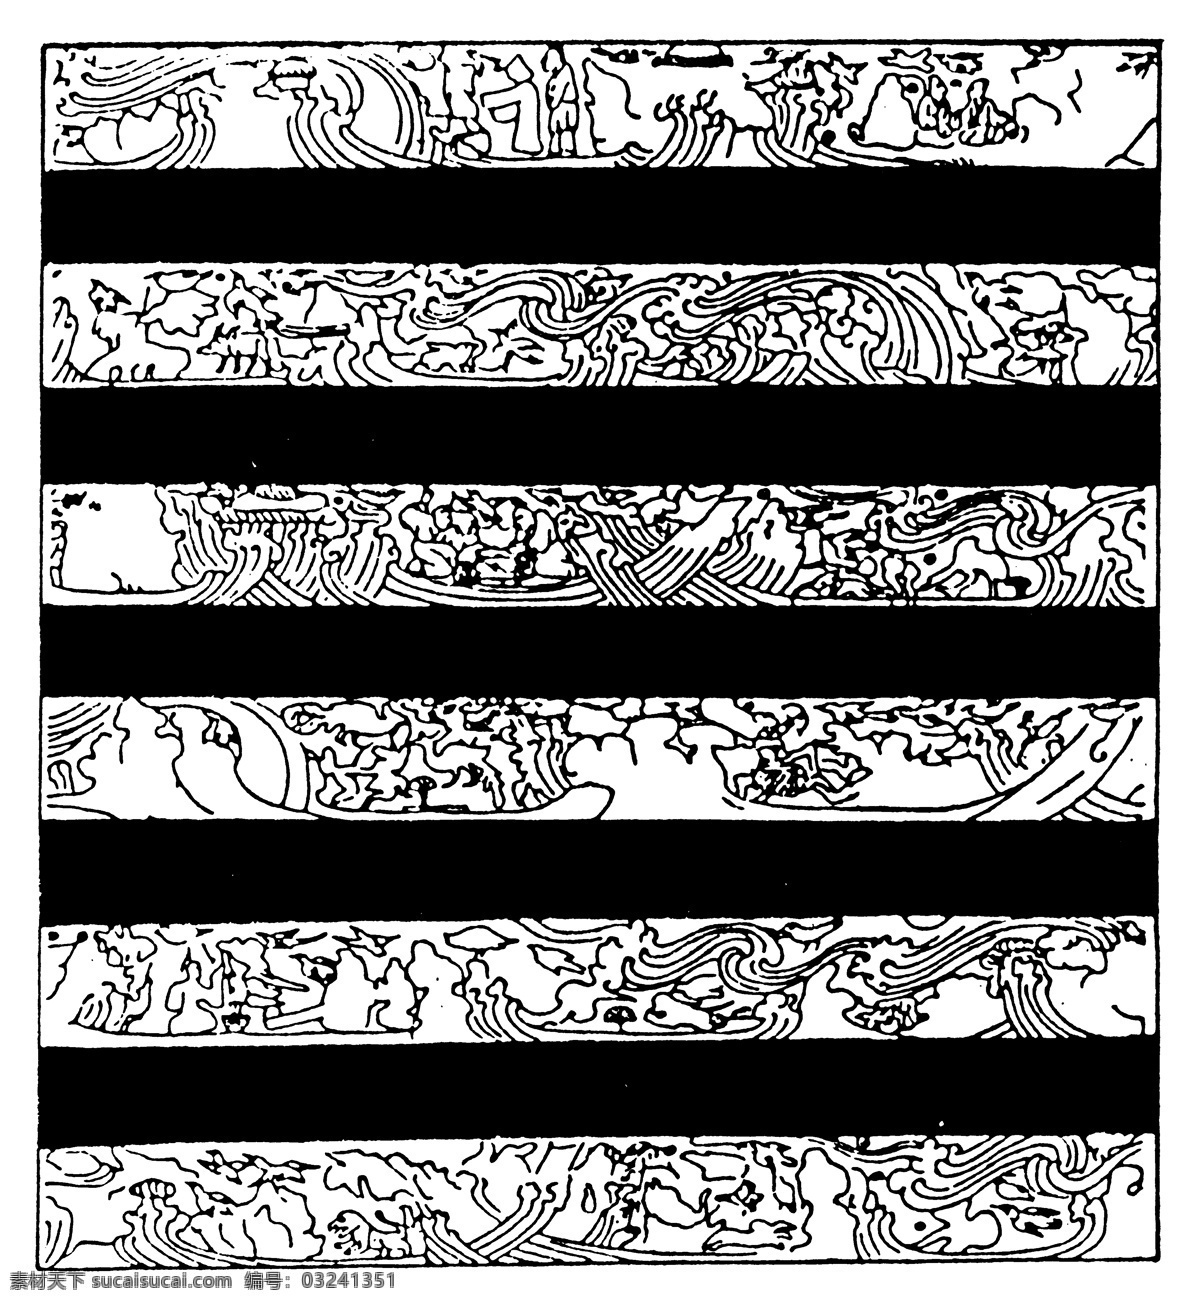 秦汉时期图案 中国 传统 图案 中国传统图案 设计素材 器物图案 装饰图案 书画美术 黑色